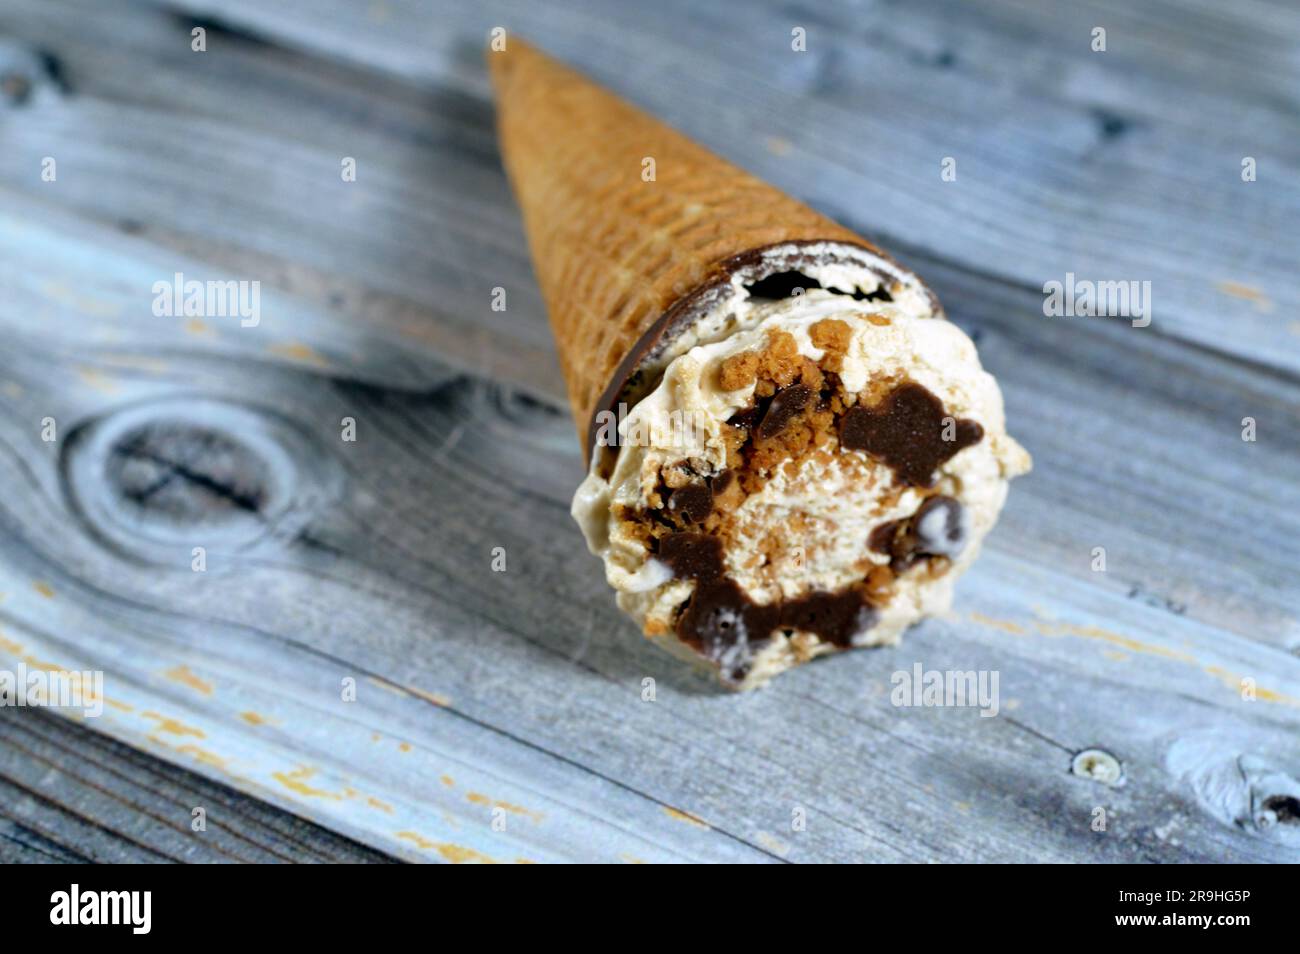 Karamellisierter Keks Eiscreme aus Kakao, Schokolade und Vanillekonus mit Keksstücken und Nüssen in knusprigen Waffelkonus, Schmelzen von kaltem Eis Stockfoto